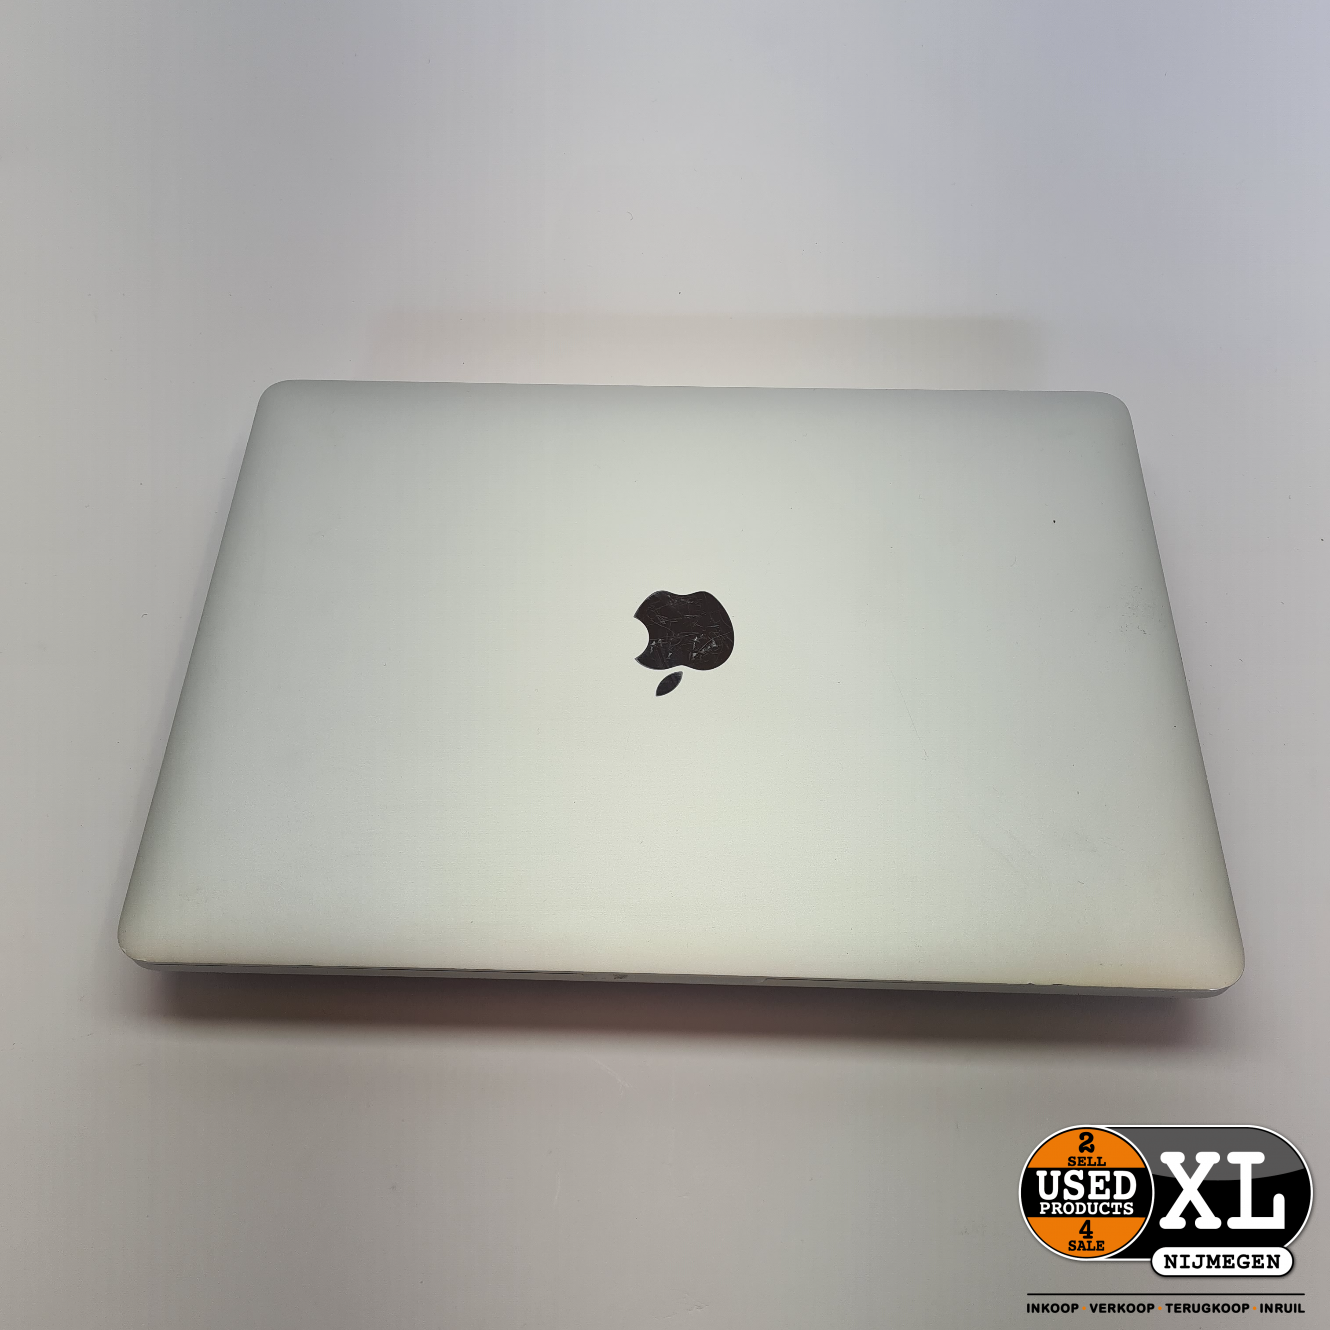 MacBook 2017 Laptop 13 Inch 8GB 256GB met Garantie - Used Products Nijmegen XL